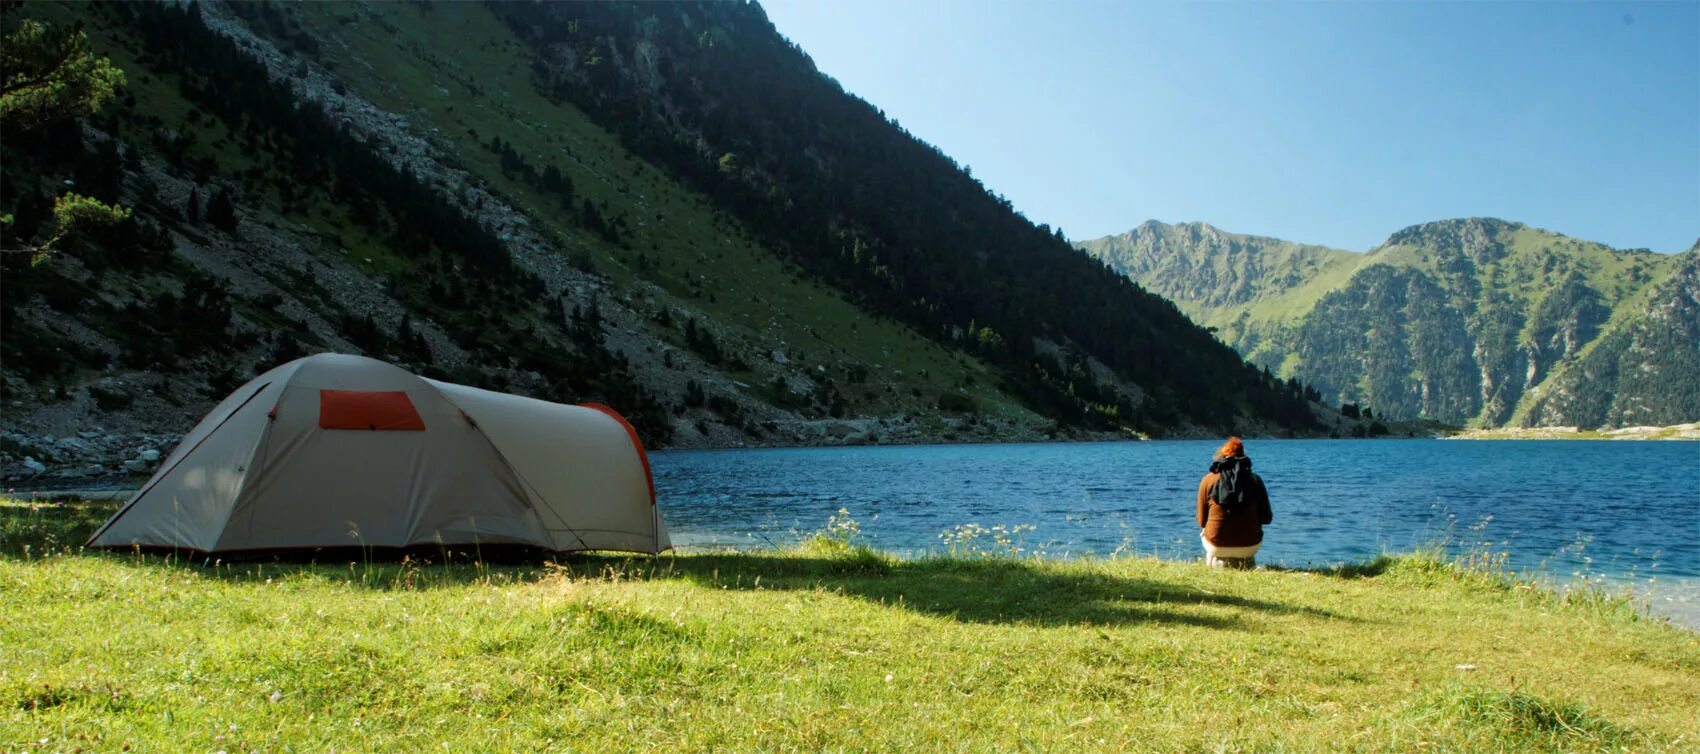 Где остановились на ночевку. Озеро Рица кемпинг. Озеро Рица палаточный лагерь. Озеро Рица палатки. Горы Алтай озеро палатка.